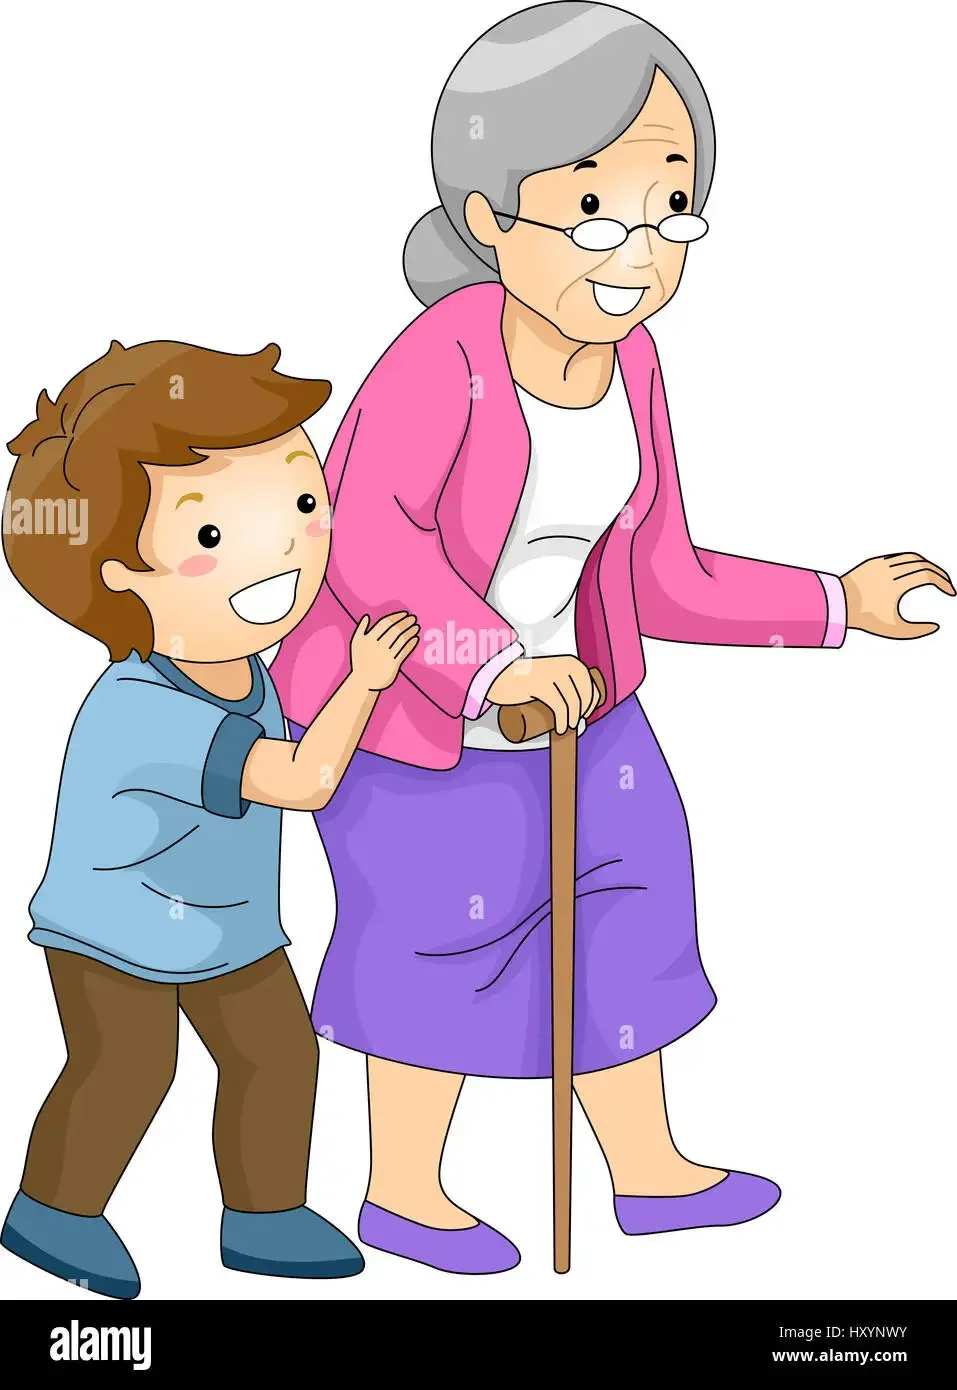 Давайте поможем бабушке. Помощь пожилым людям иллюстрации. Дети помогают старшим. Помогать пожилым людям. Дети помогают пожилым.